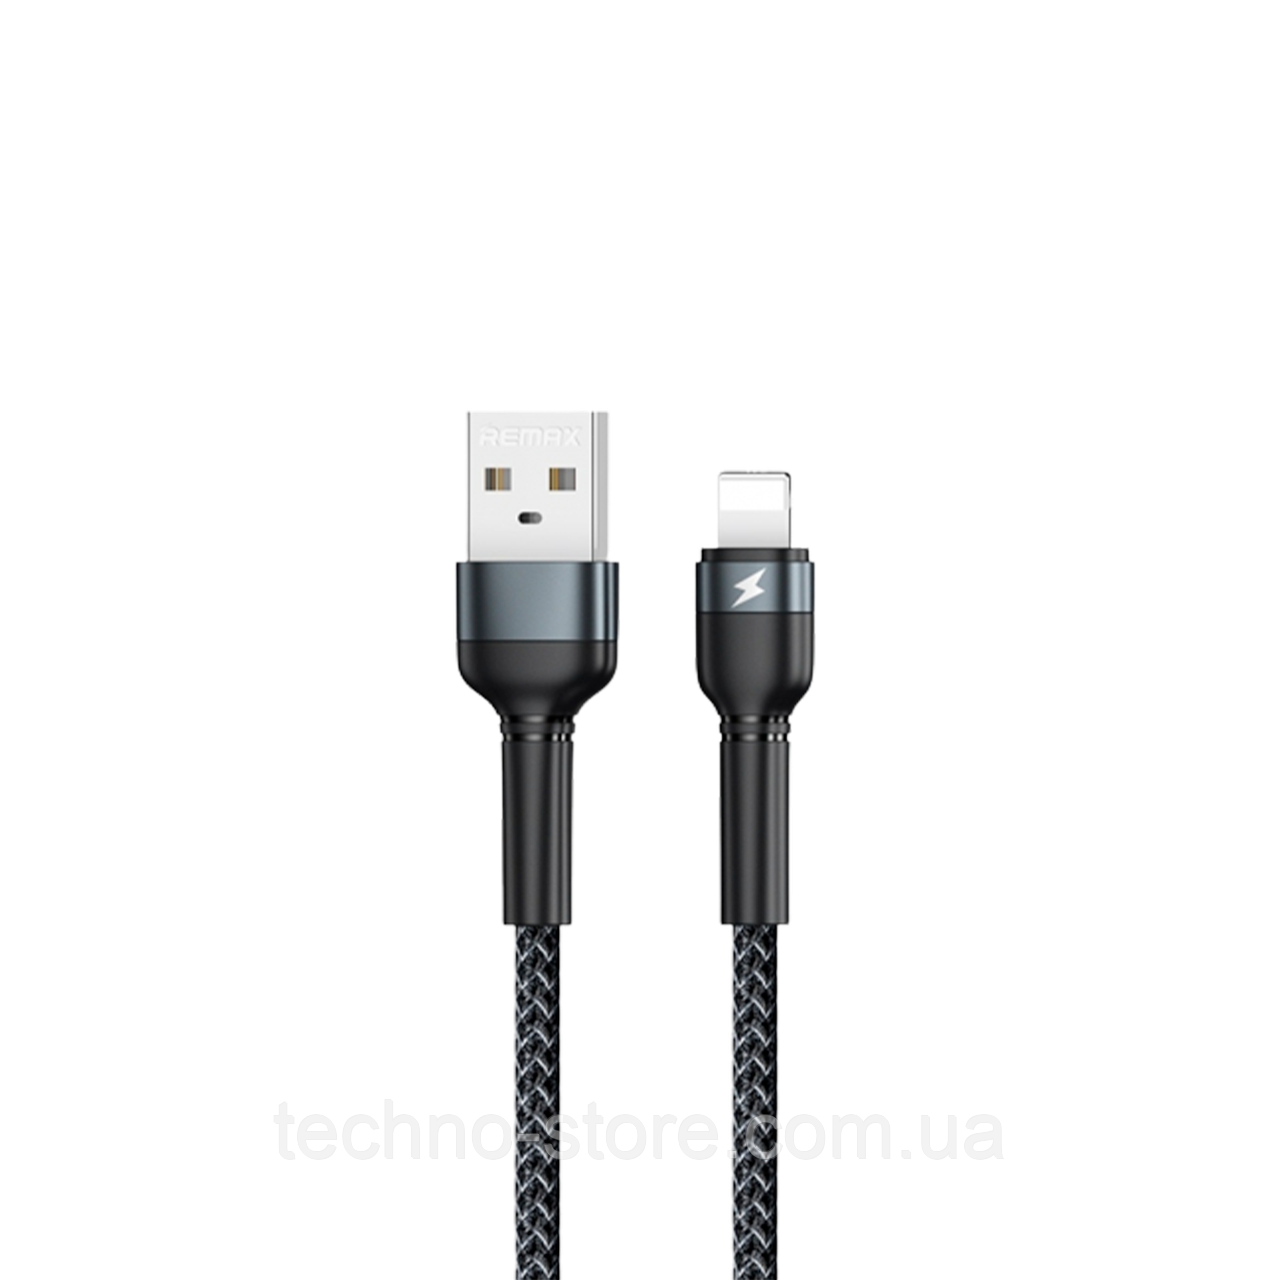 Кабель Remax Jany USB 2.0 to Lightning 2.4A 1M Черный (RC-124i)